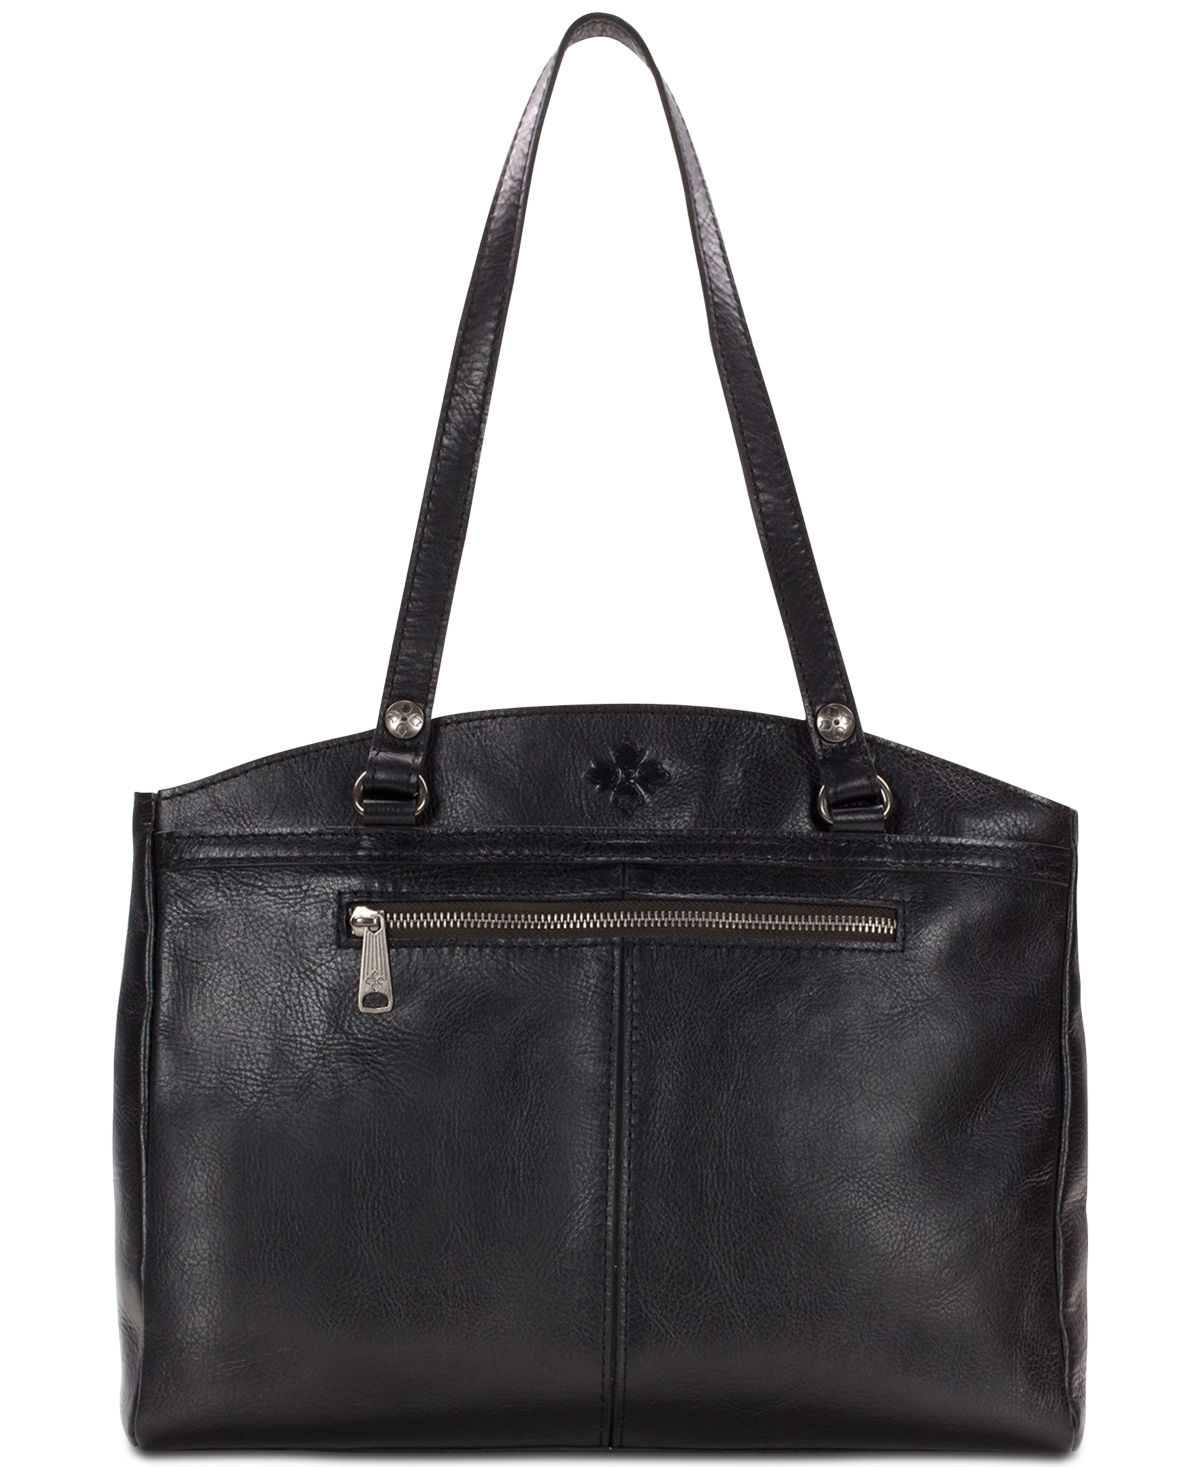 Poppy Smooth Leather Shoulder Bag - Black/Silver